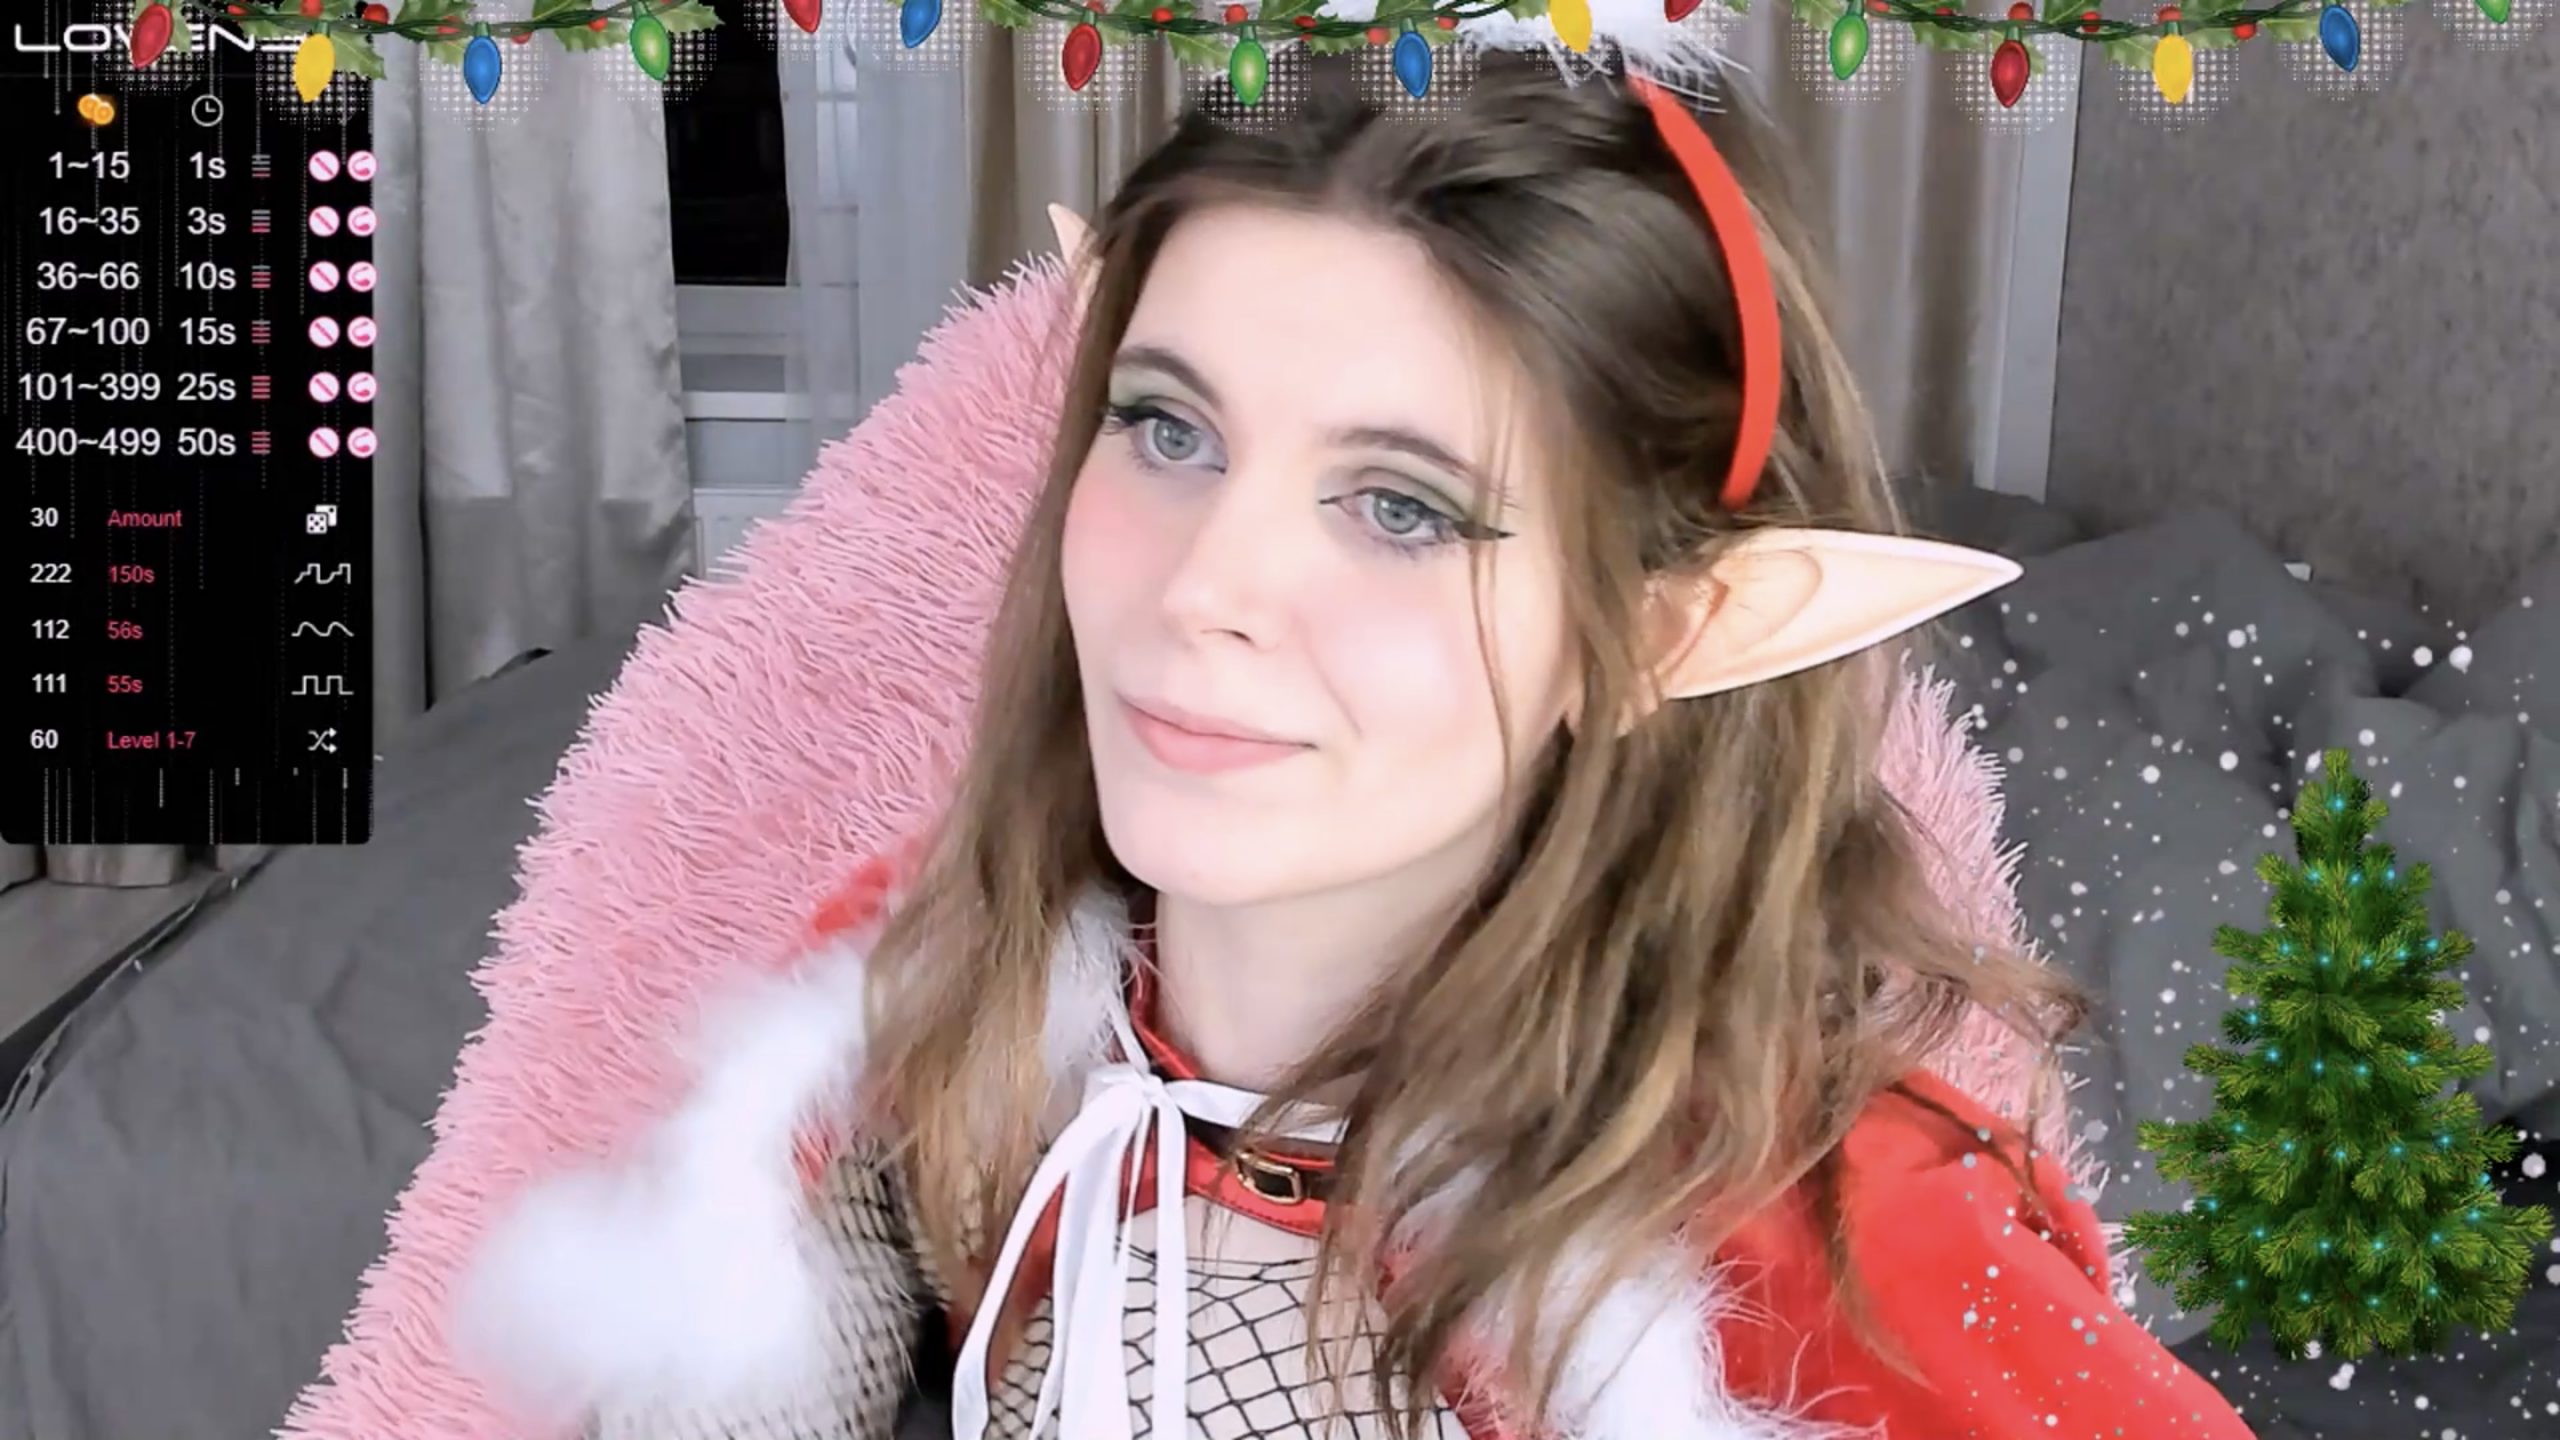 Angel_Tea Brings Christmas As An Elf